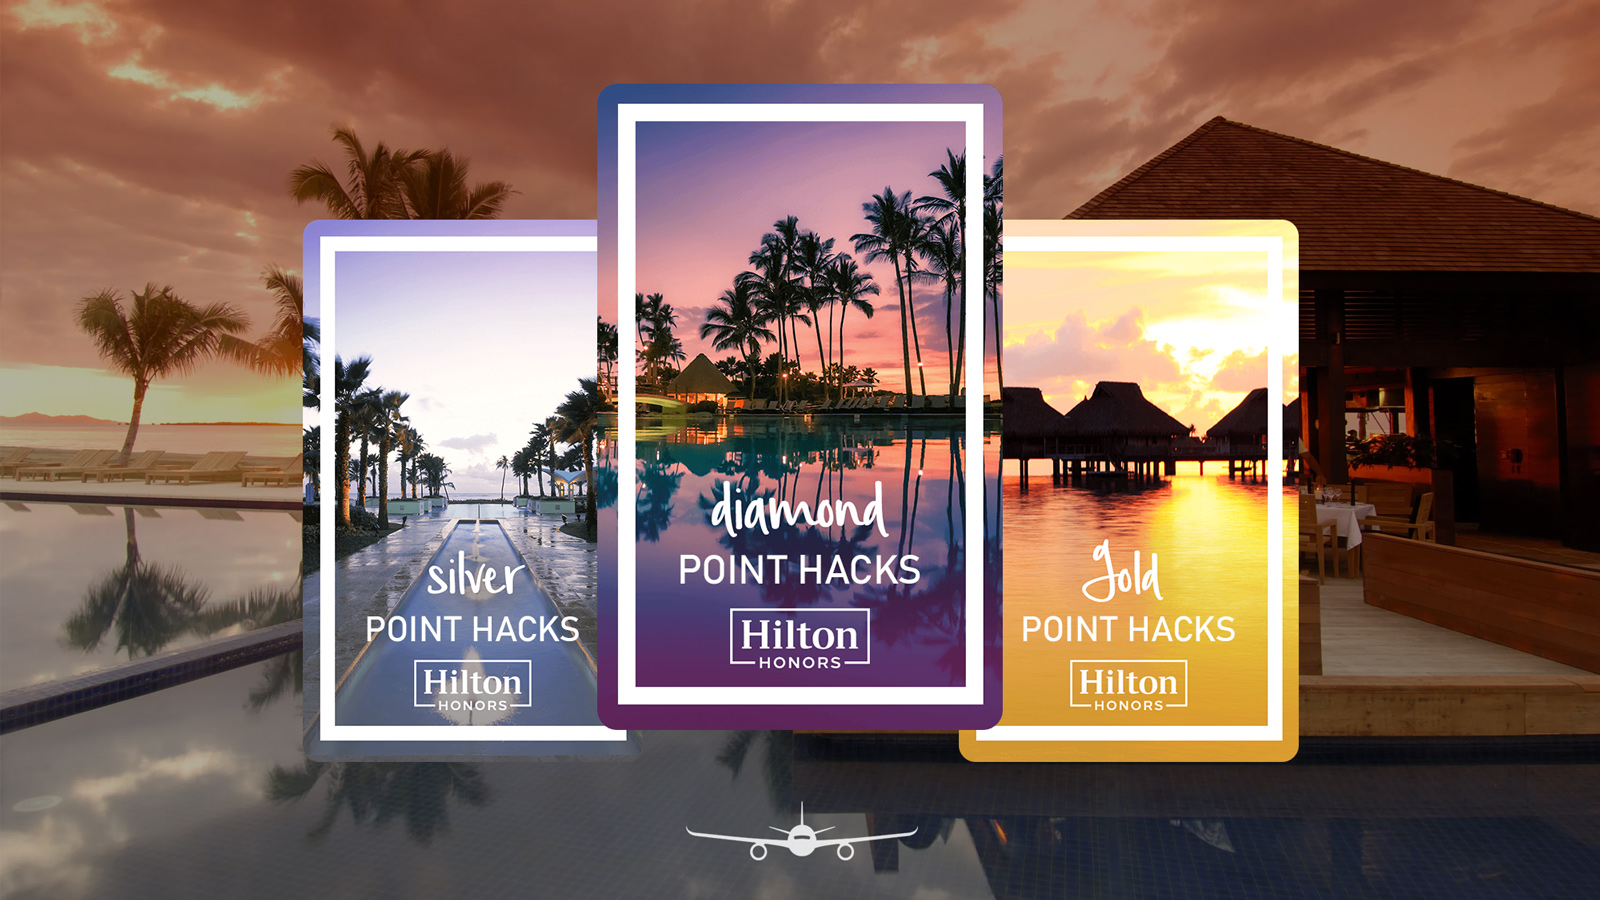 Hilton Honors now extends elite status until 2022 - Point Hacks